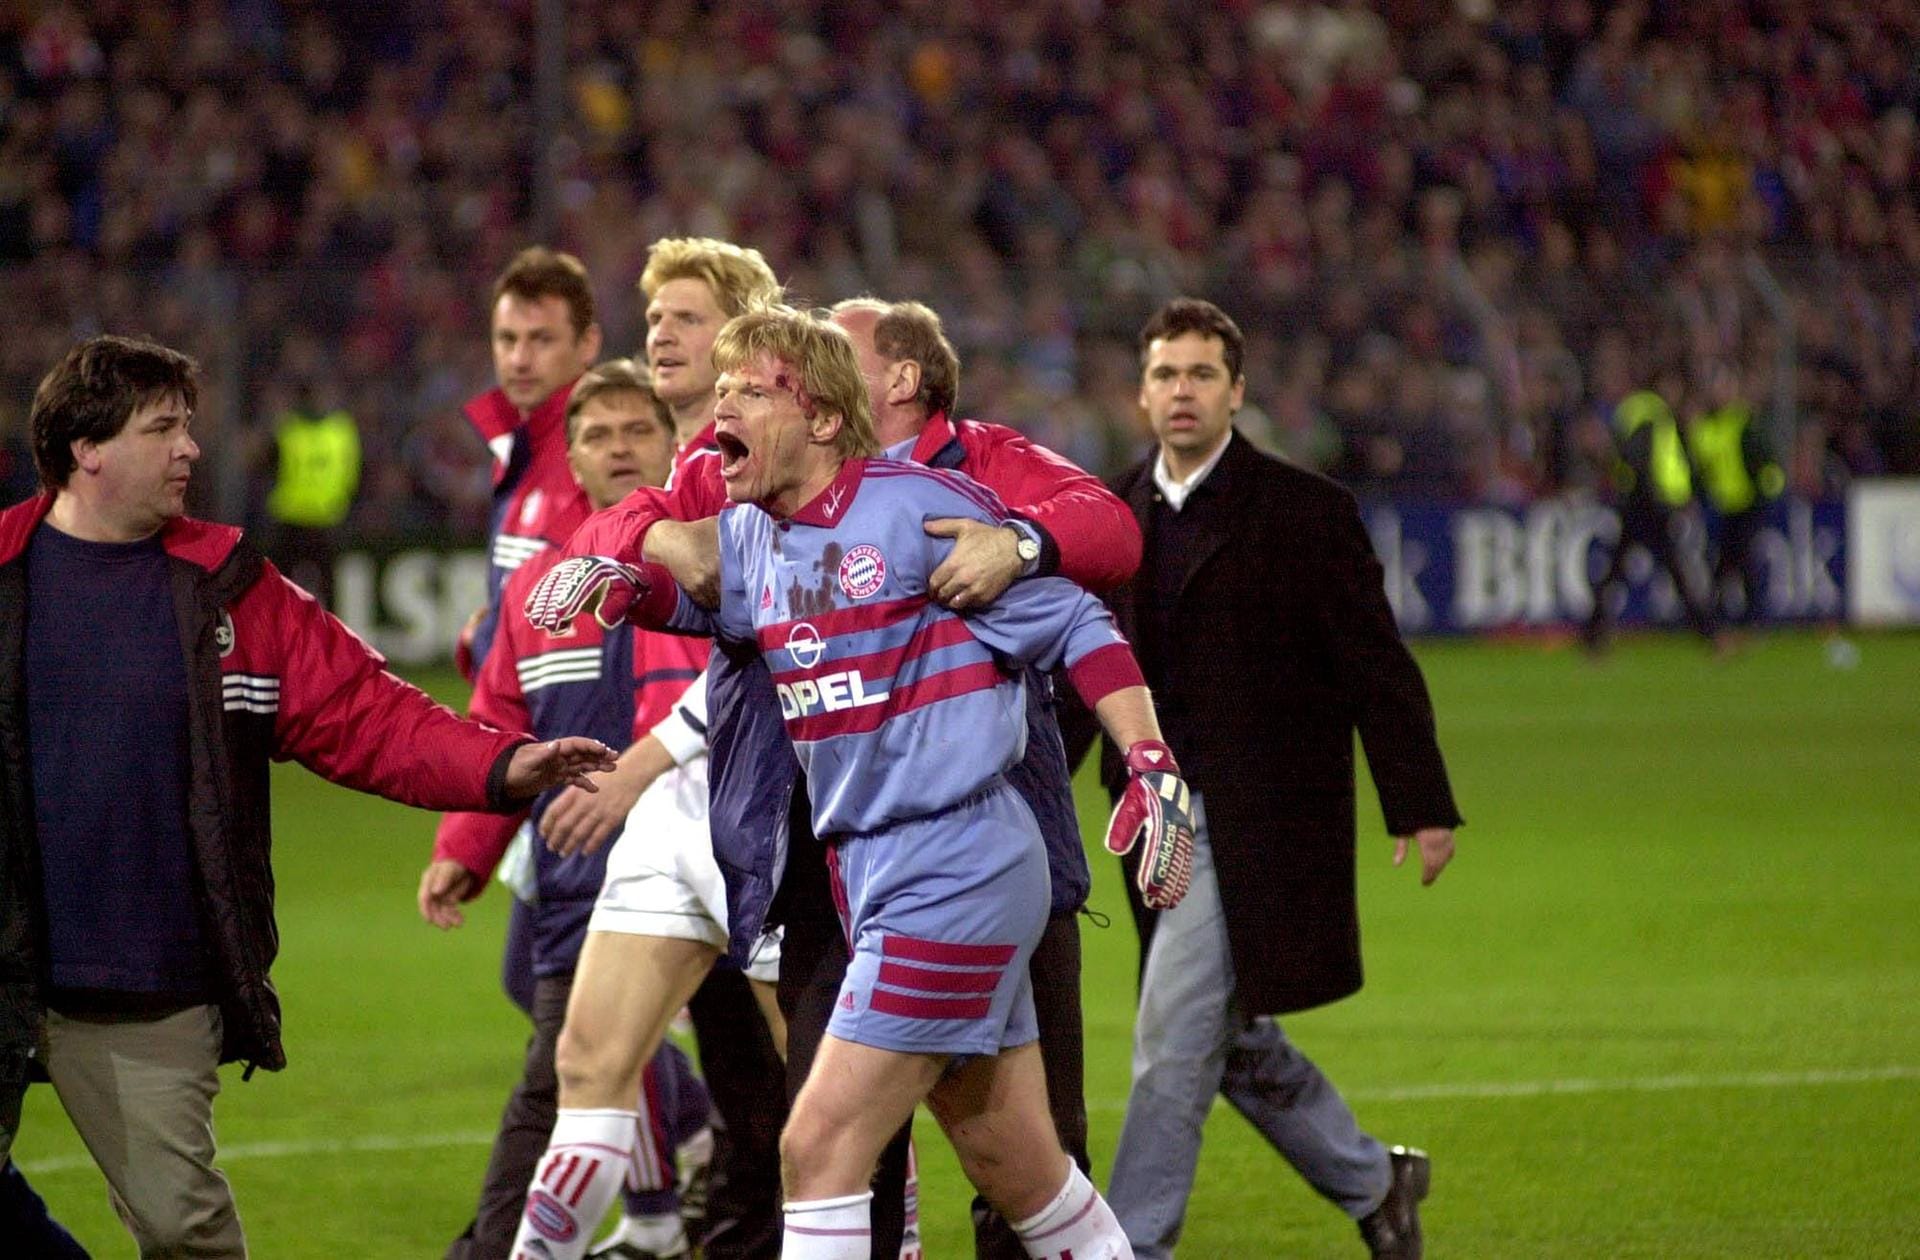 Am 12.4.2000 wurde Kahn erneut "Opfer": Ein Freiburger Fan traf den Bayern-Keeper mit einem Golfball am Kopf. Der damalige FCB-Manager Uli Hoeneß musste den Torwart zurückhalten.